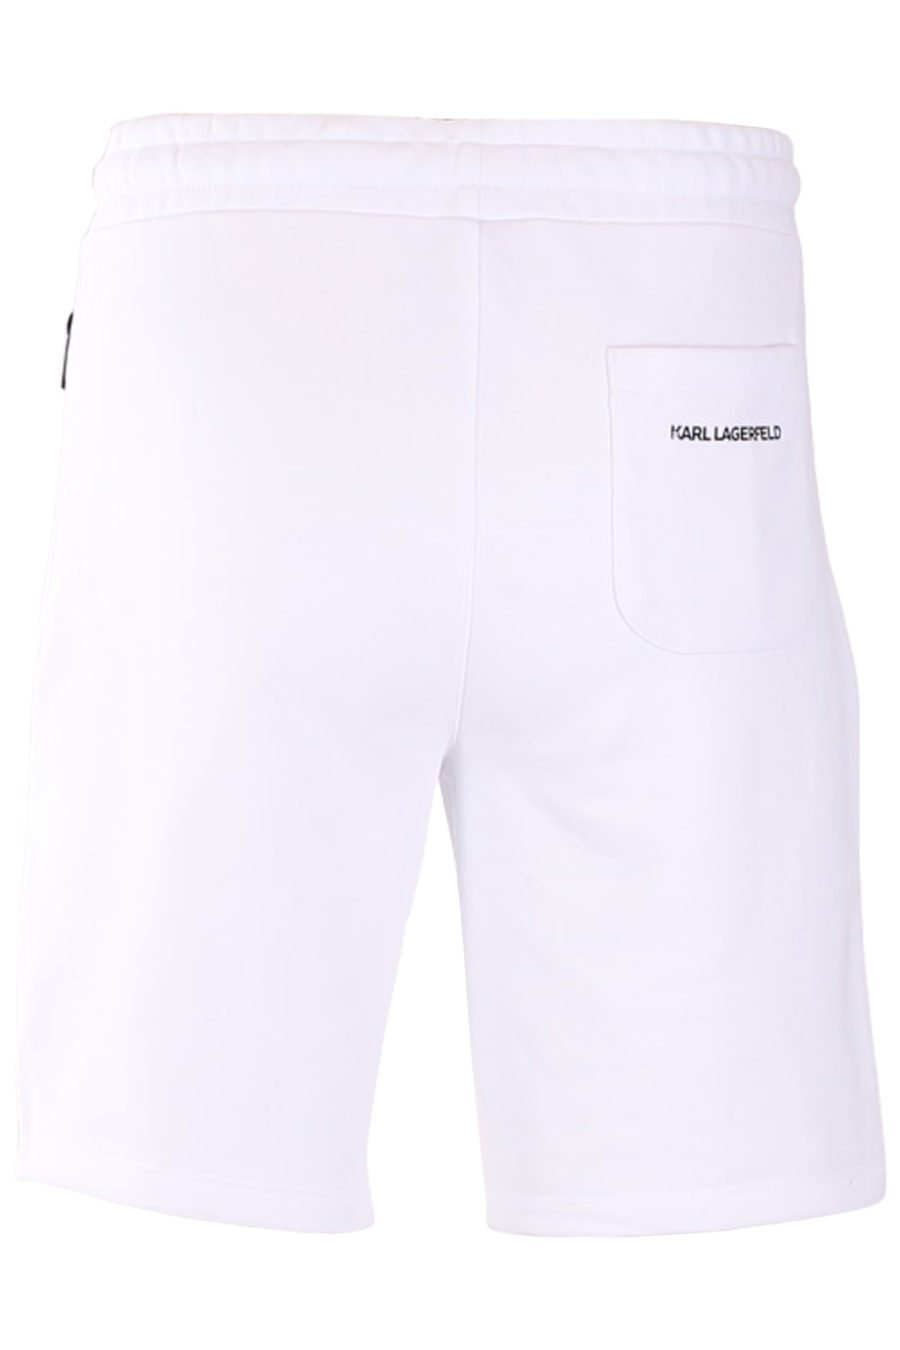 Pantalón corto blanco con logo plateado - 19318bf8e2ffabda922f6e0e0e53de53a48c371b